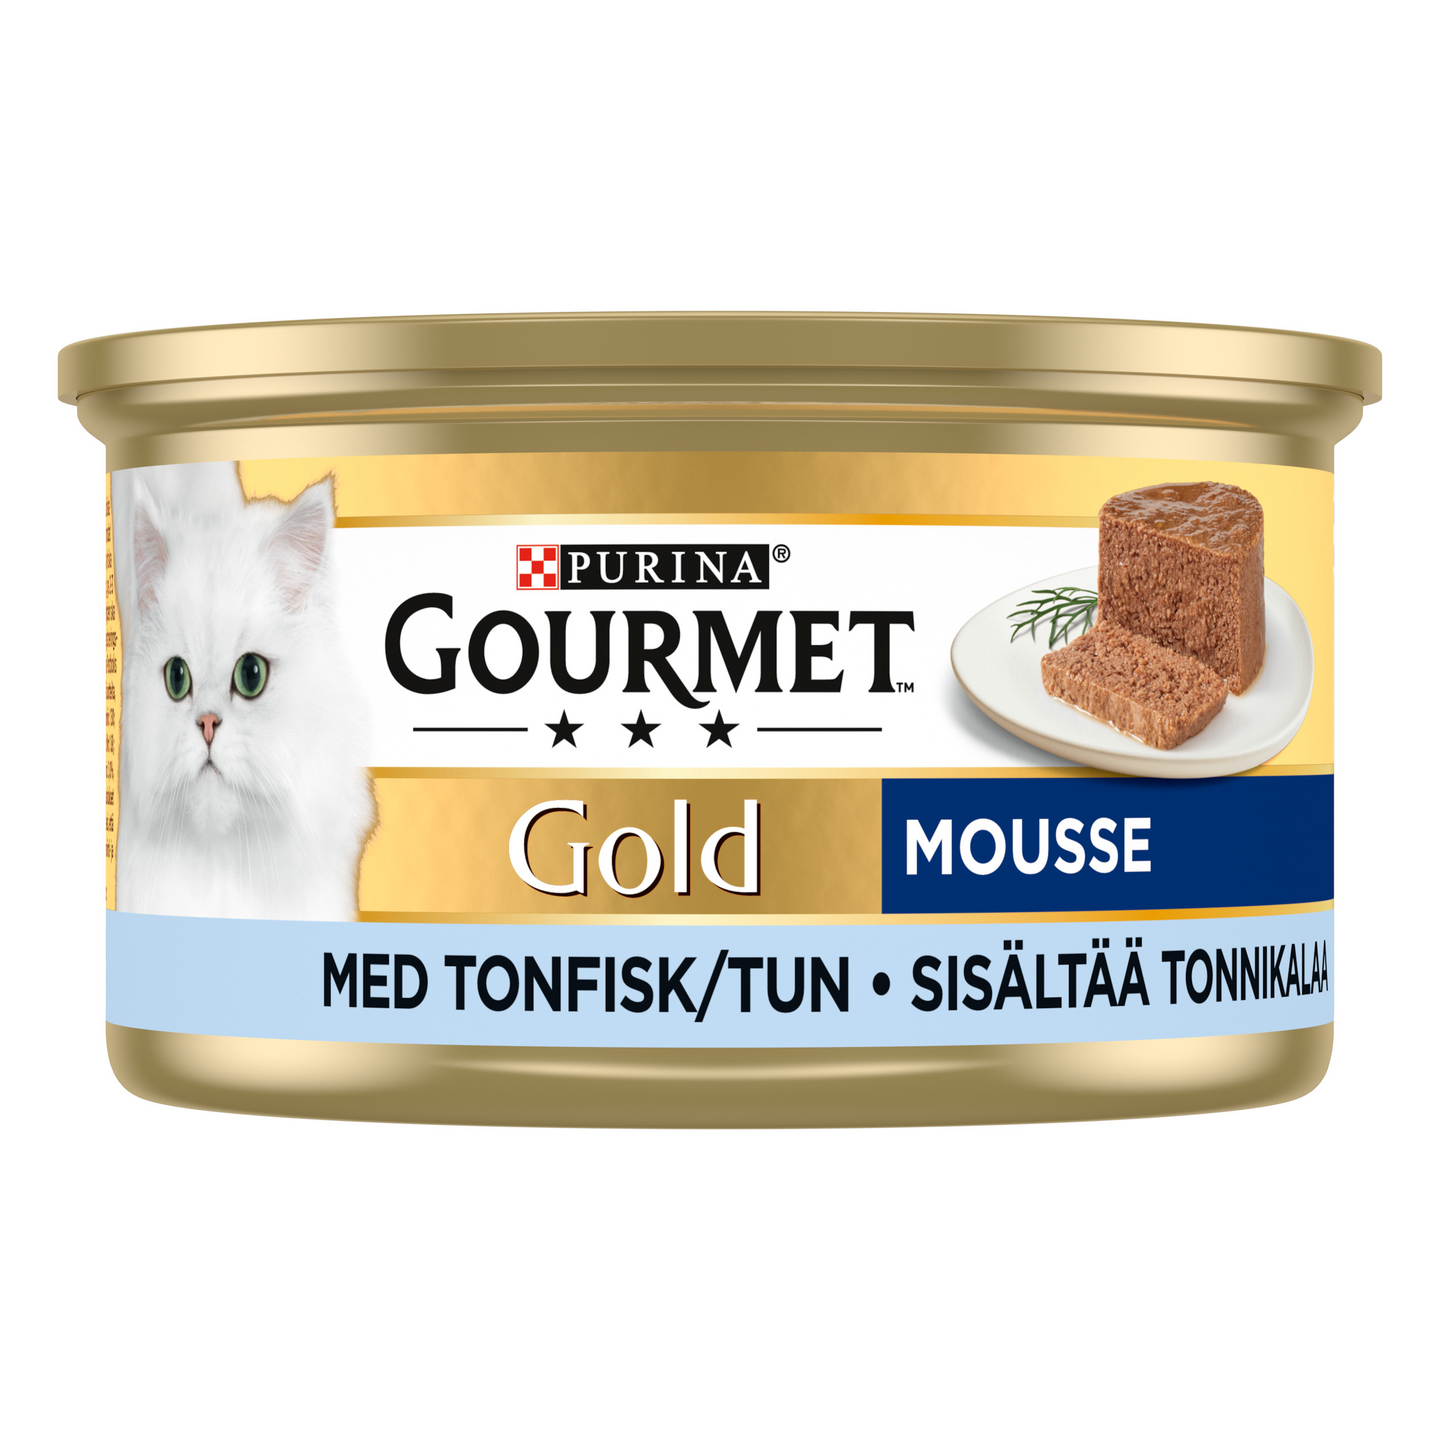 Gourmet Gold Tonnikalaa Mousse 85g kissanruoka